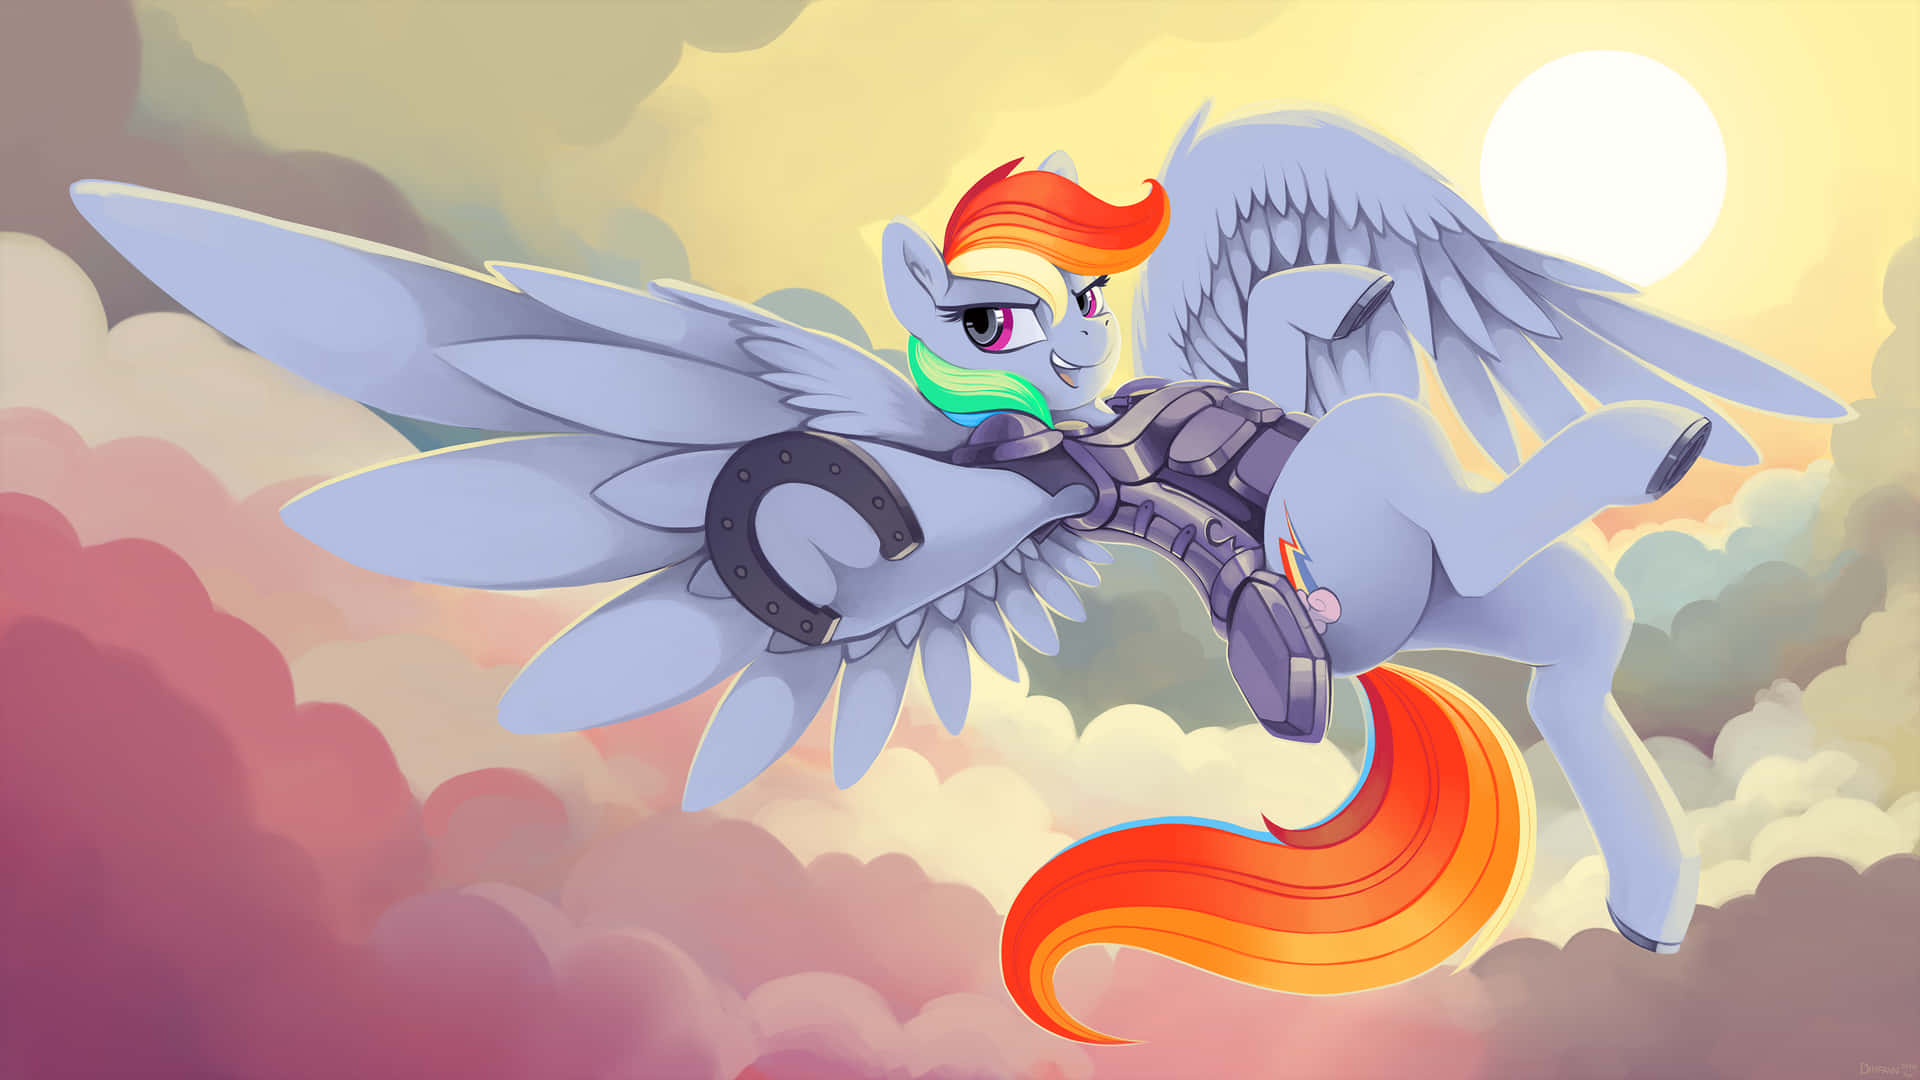 MLP Baggrund Rainbow Dash Tapet: En sød tegning af den karakteristiske Rainbow Dash fra My Little Pony serien.